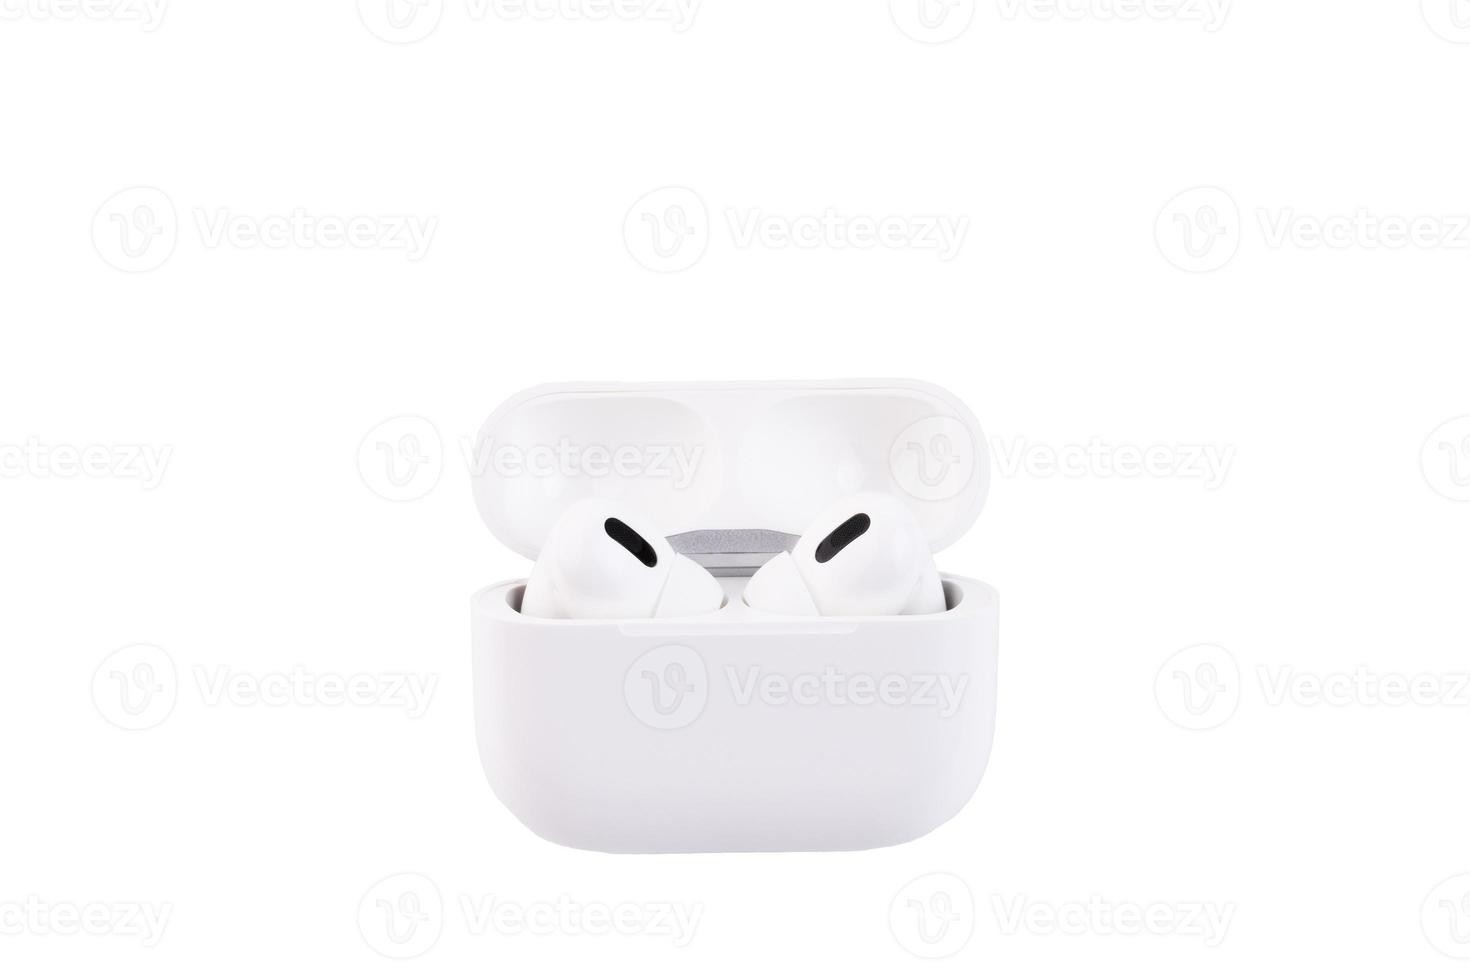 fones de ouvido sem fio brancos em uma caixa de armazenamento e carregamento. branco, isolado, fundo foto